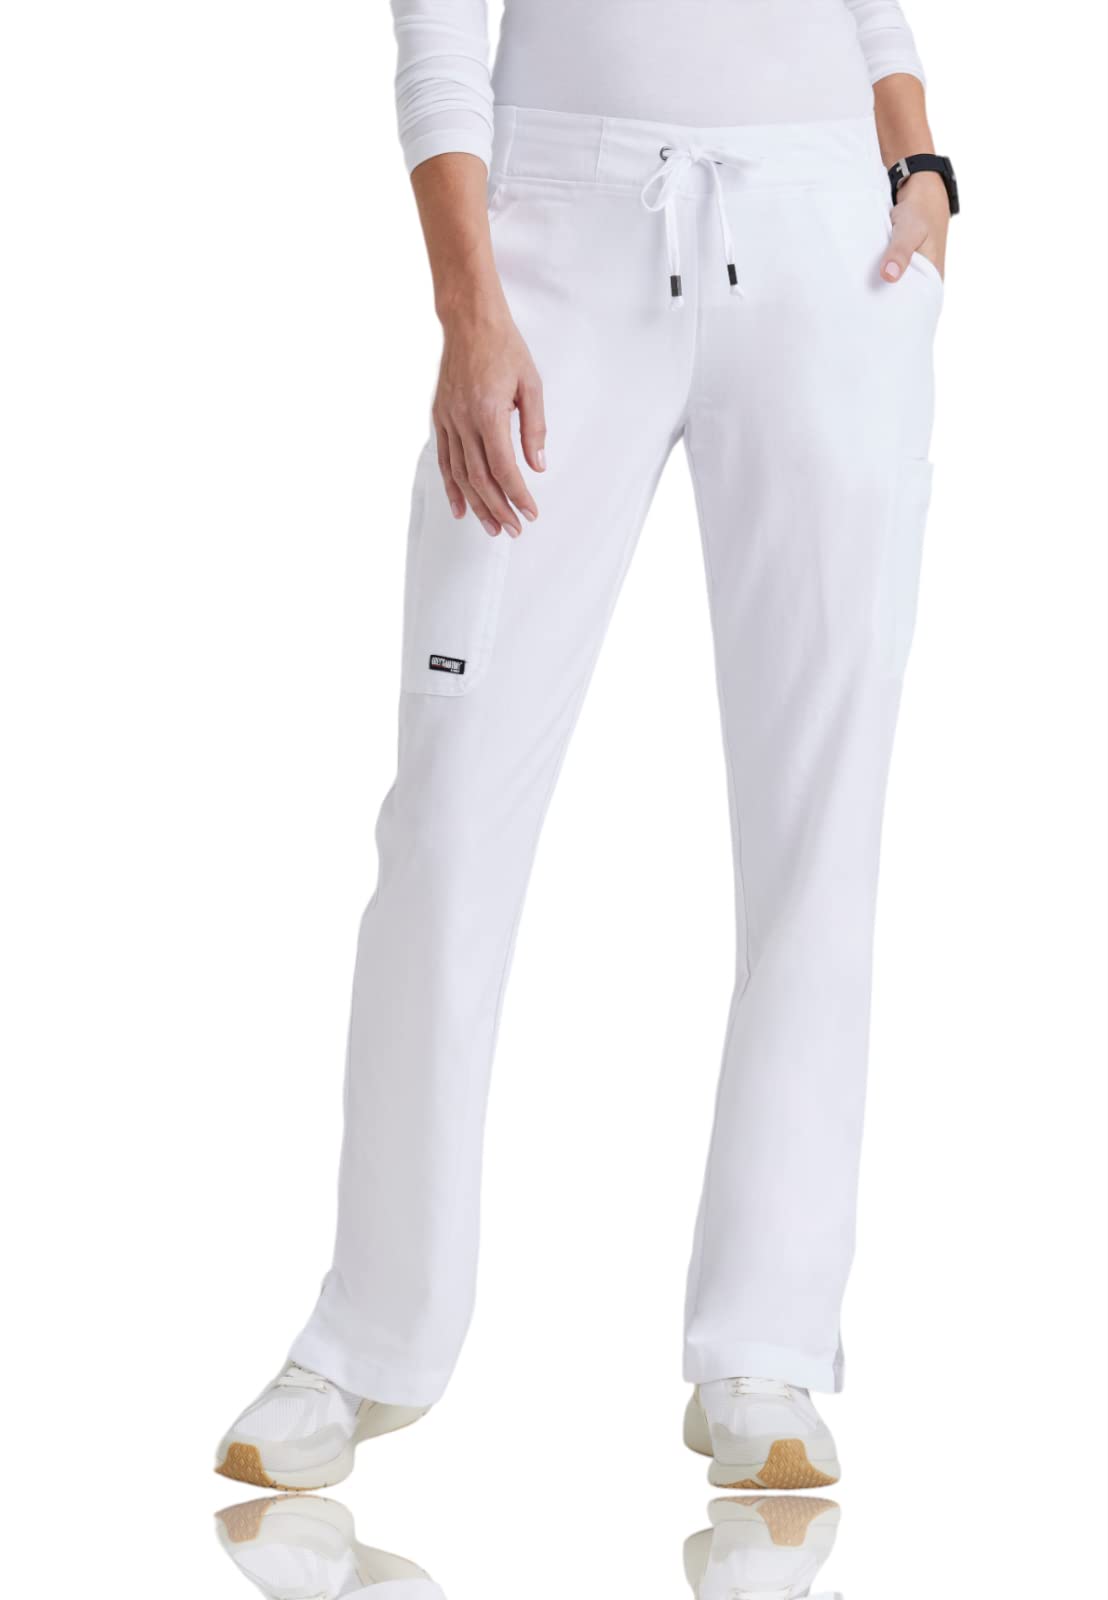 BARCO Grey's Anatomy Damen-Schlupfhose Mia, pflegeleicht, mit 6 Taschen und elastischem Bund mit Kordelzug, Weiß, Small Zierlich